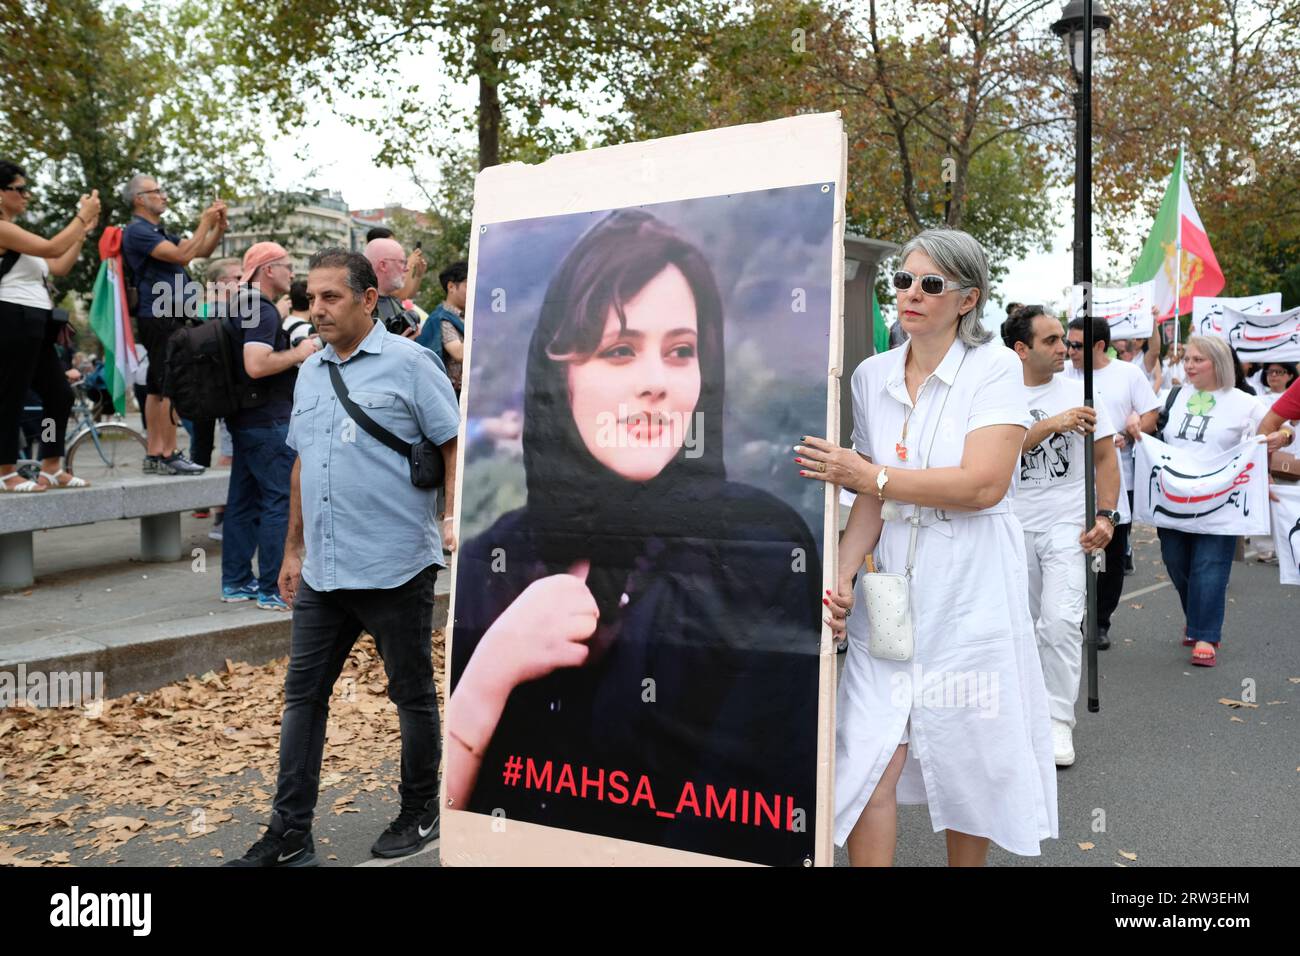 Manifestation à Paris pour le 1er anniversaire de la mort de Mahsa Amini en Iran.plusieurs centaines de personnes au départ du cortège à la Bastille Foto Stock